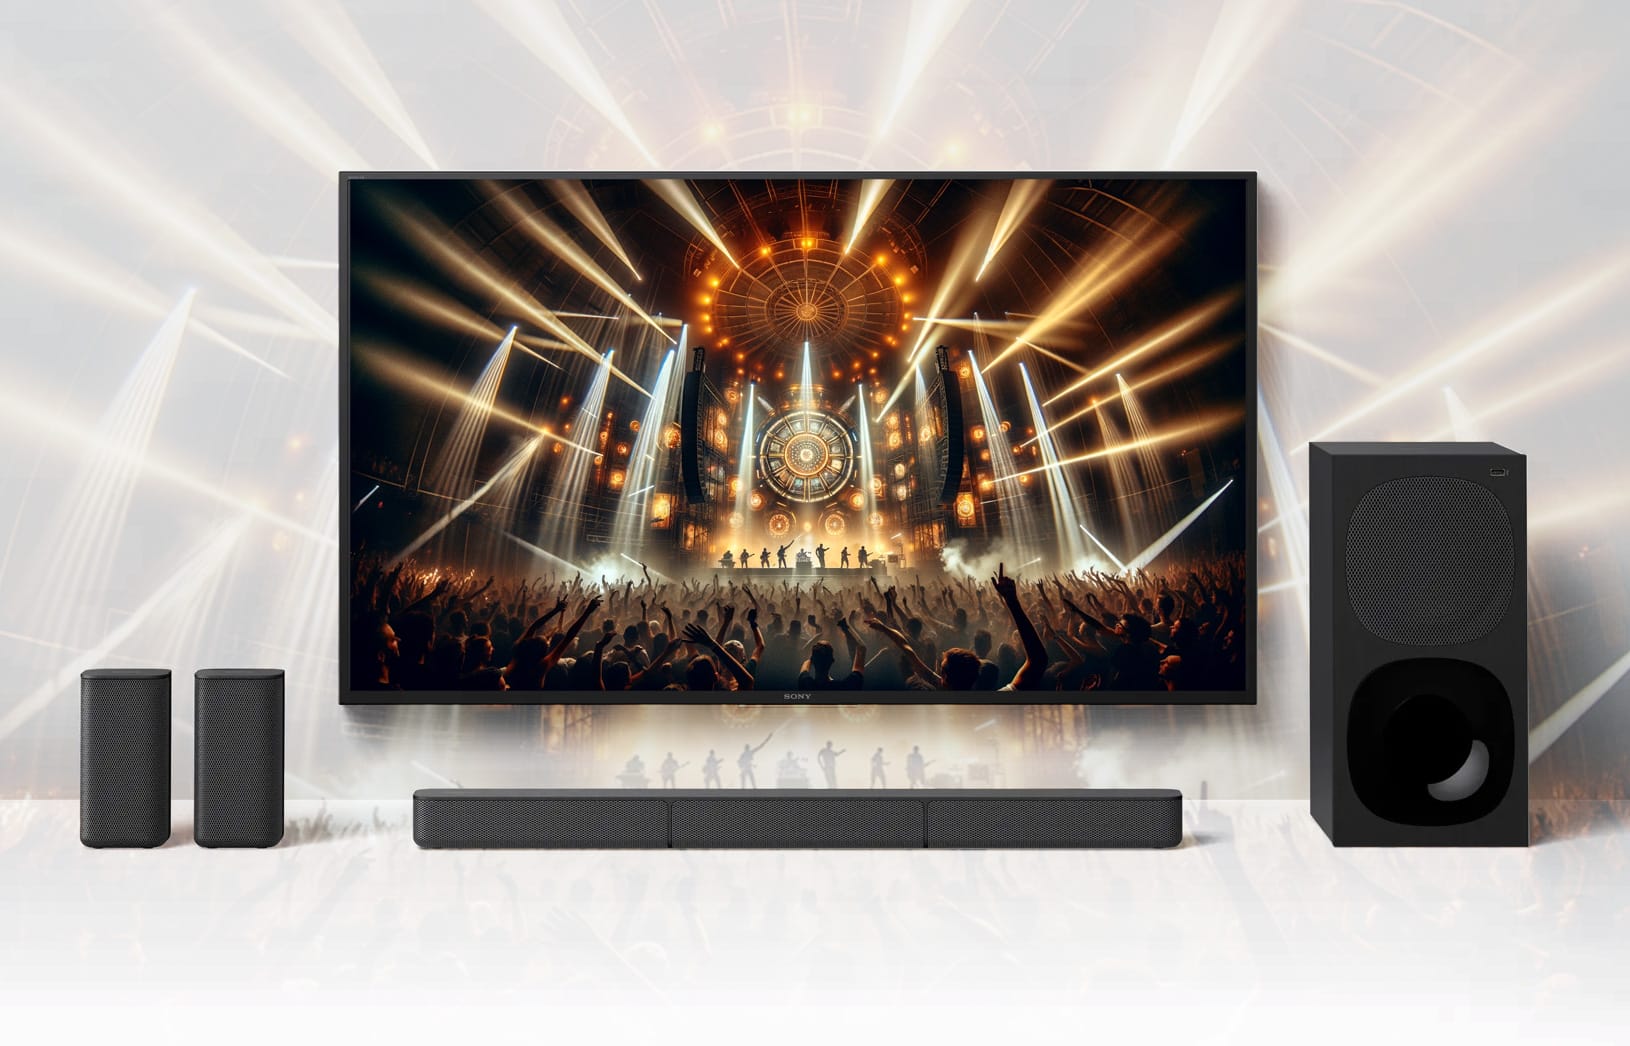 Sony bringt beliebte Soundbar-Kombi Markt! den - HT-S20R auf zurück 4K Filme